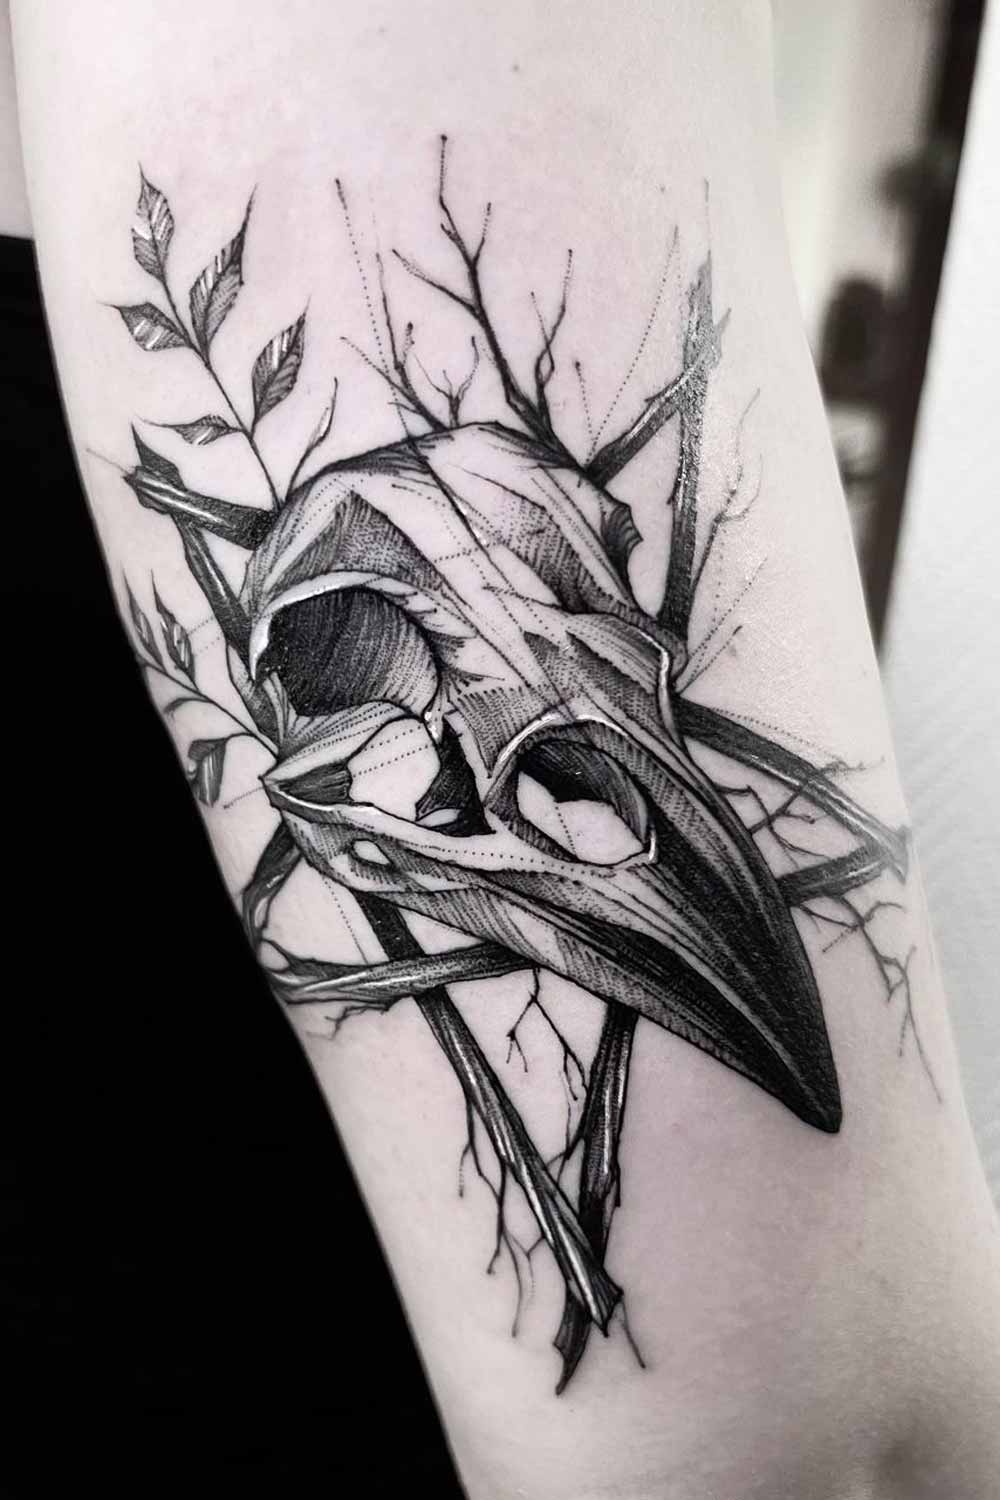 Raven Skull Tattoo by @moona.autumn